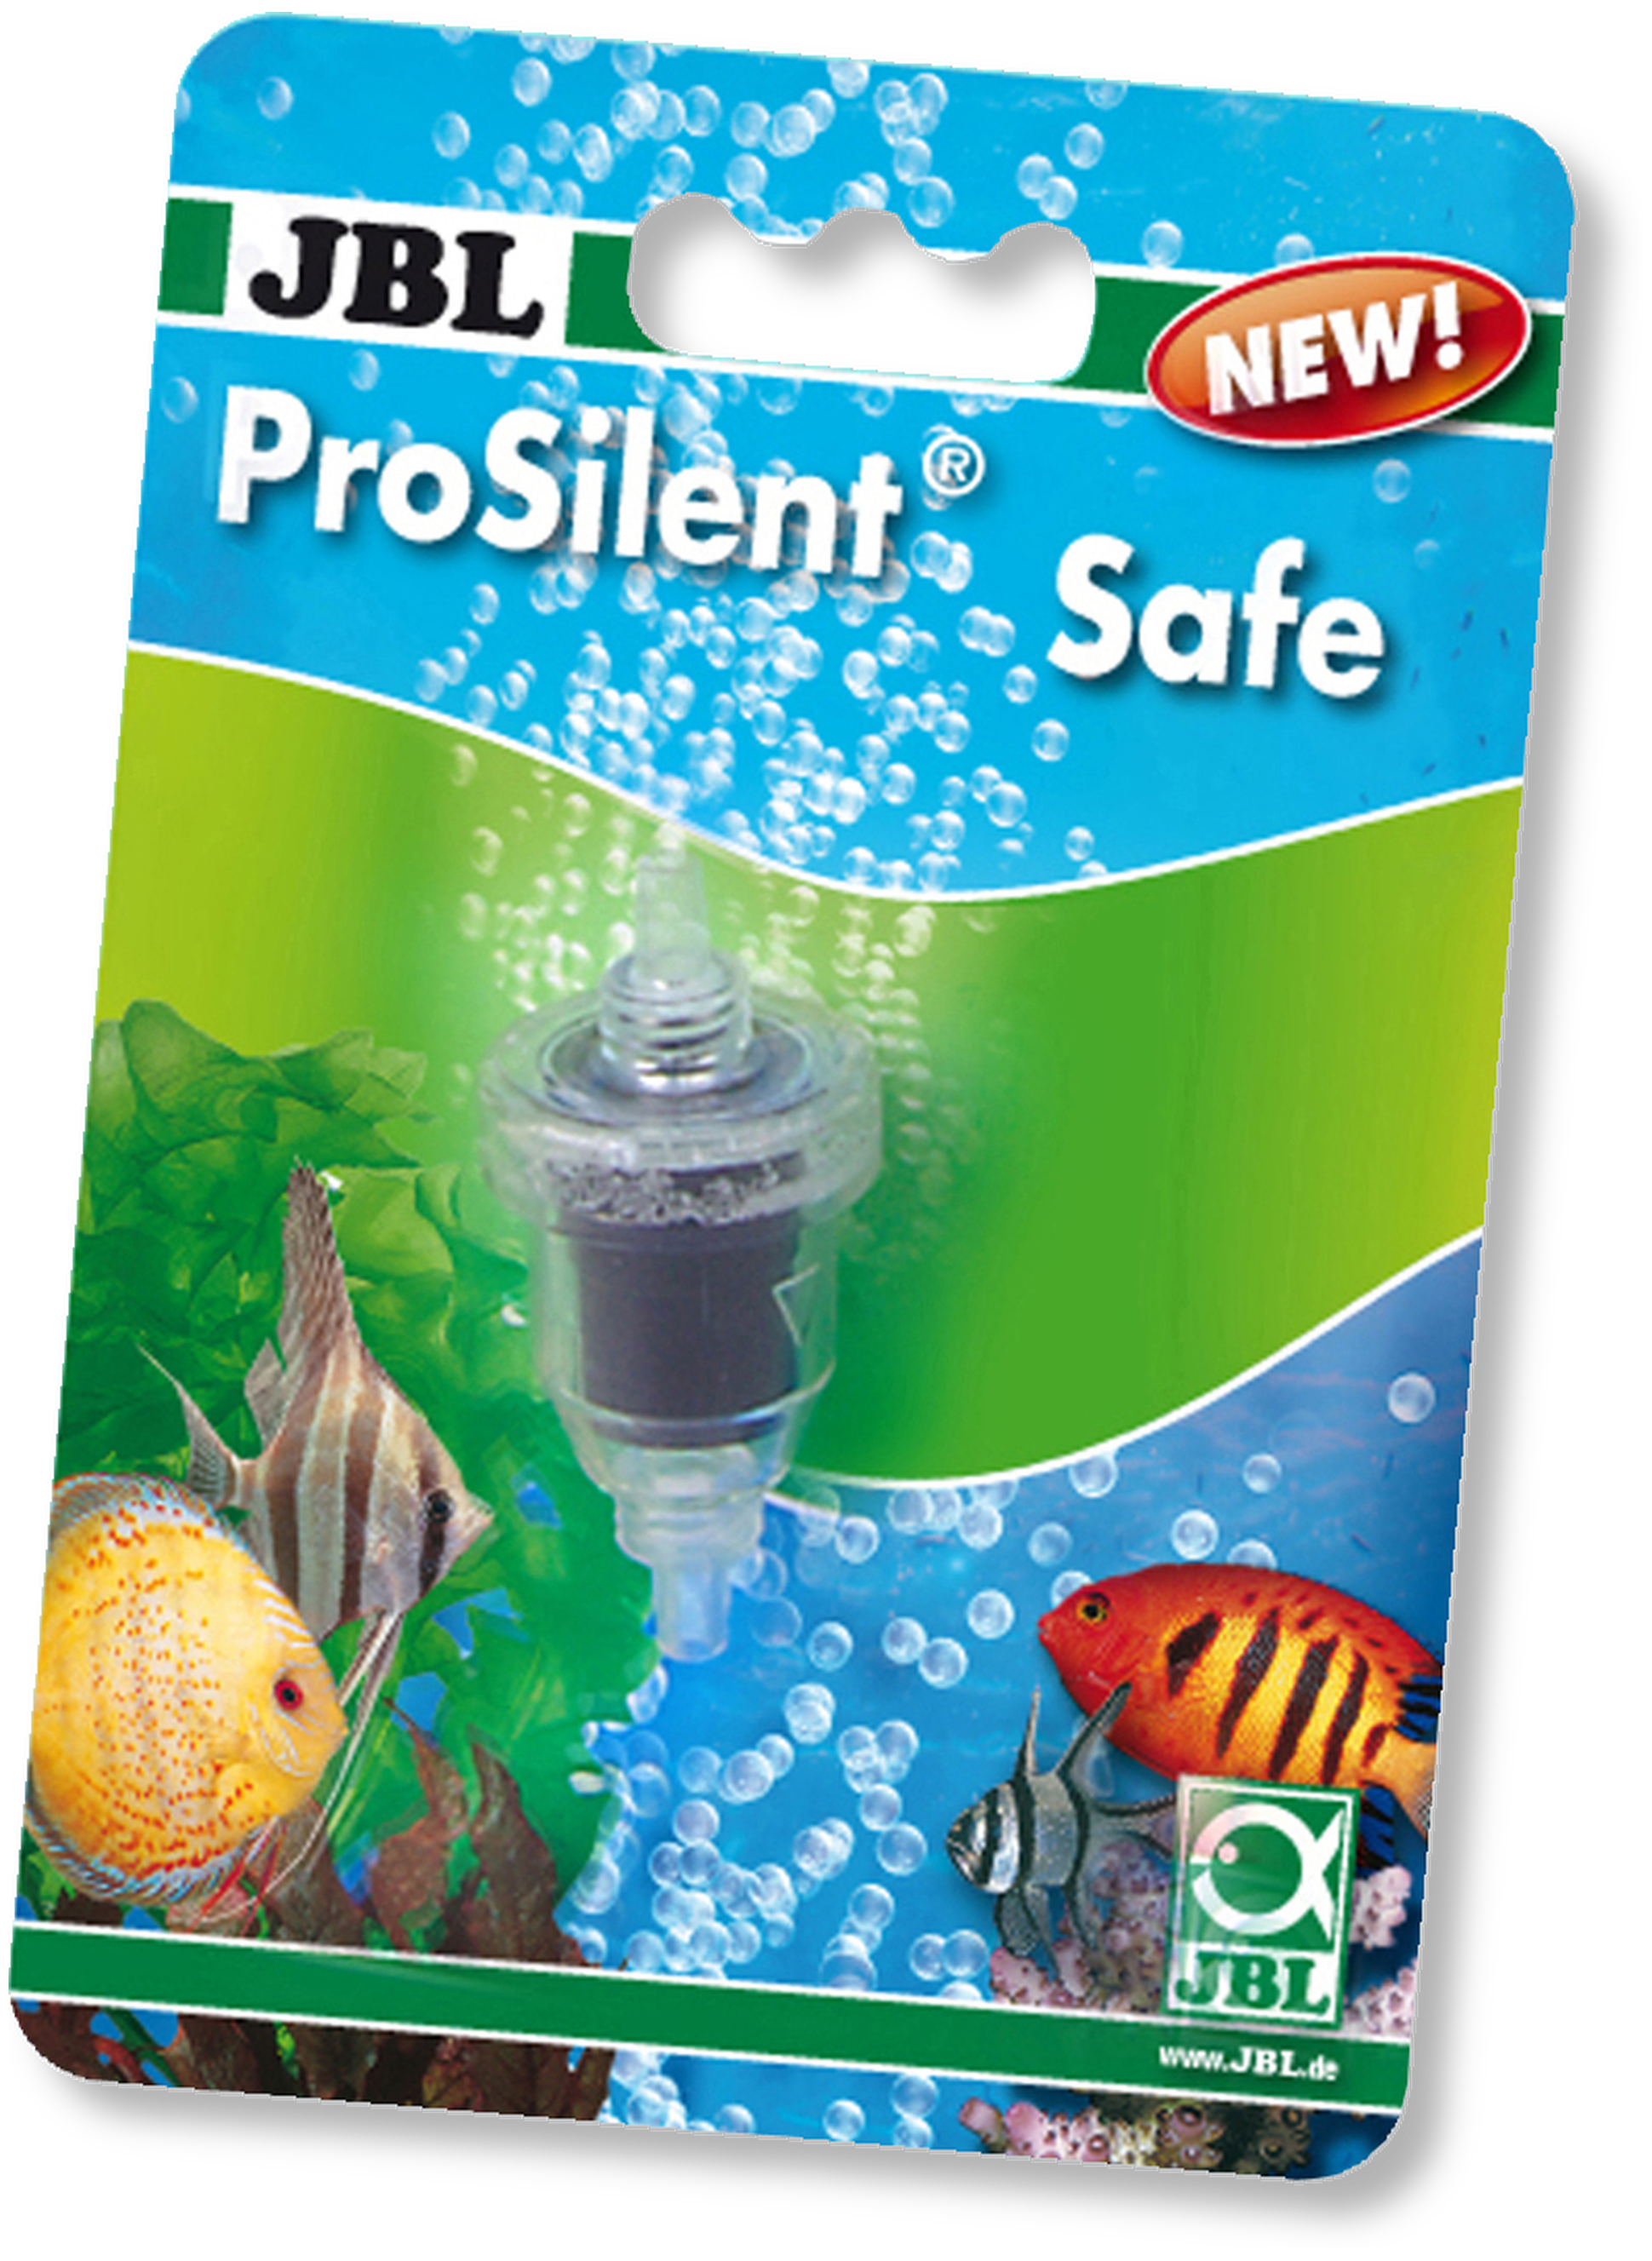 JBL ProSilent Safe Wasserrücklaufsicherung